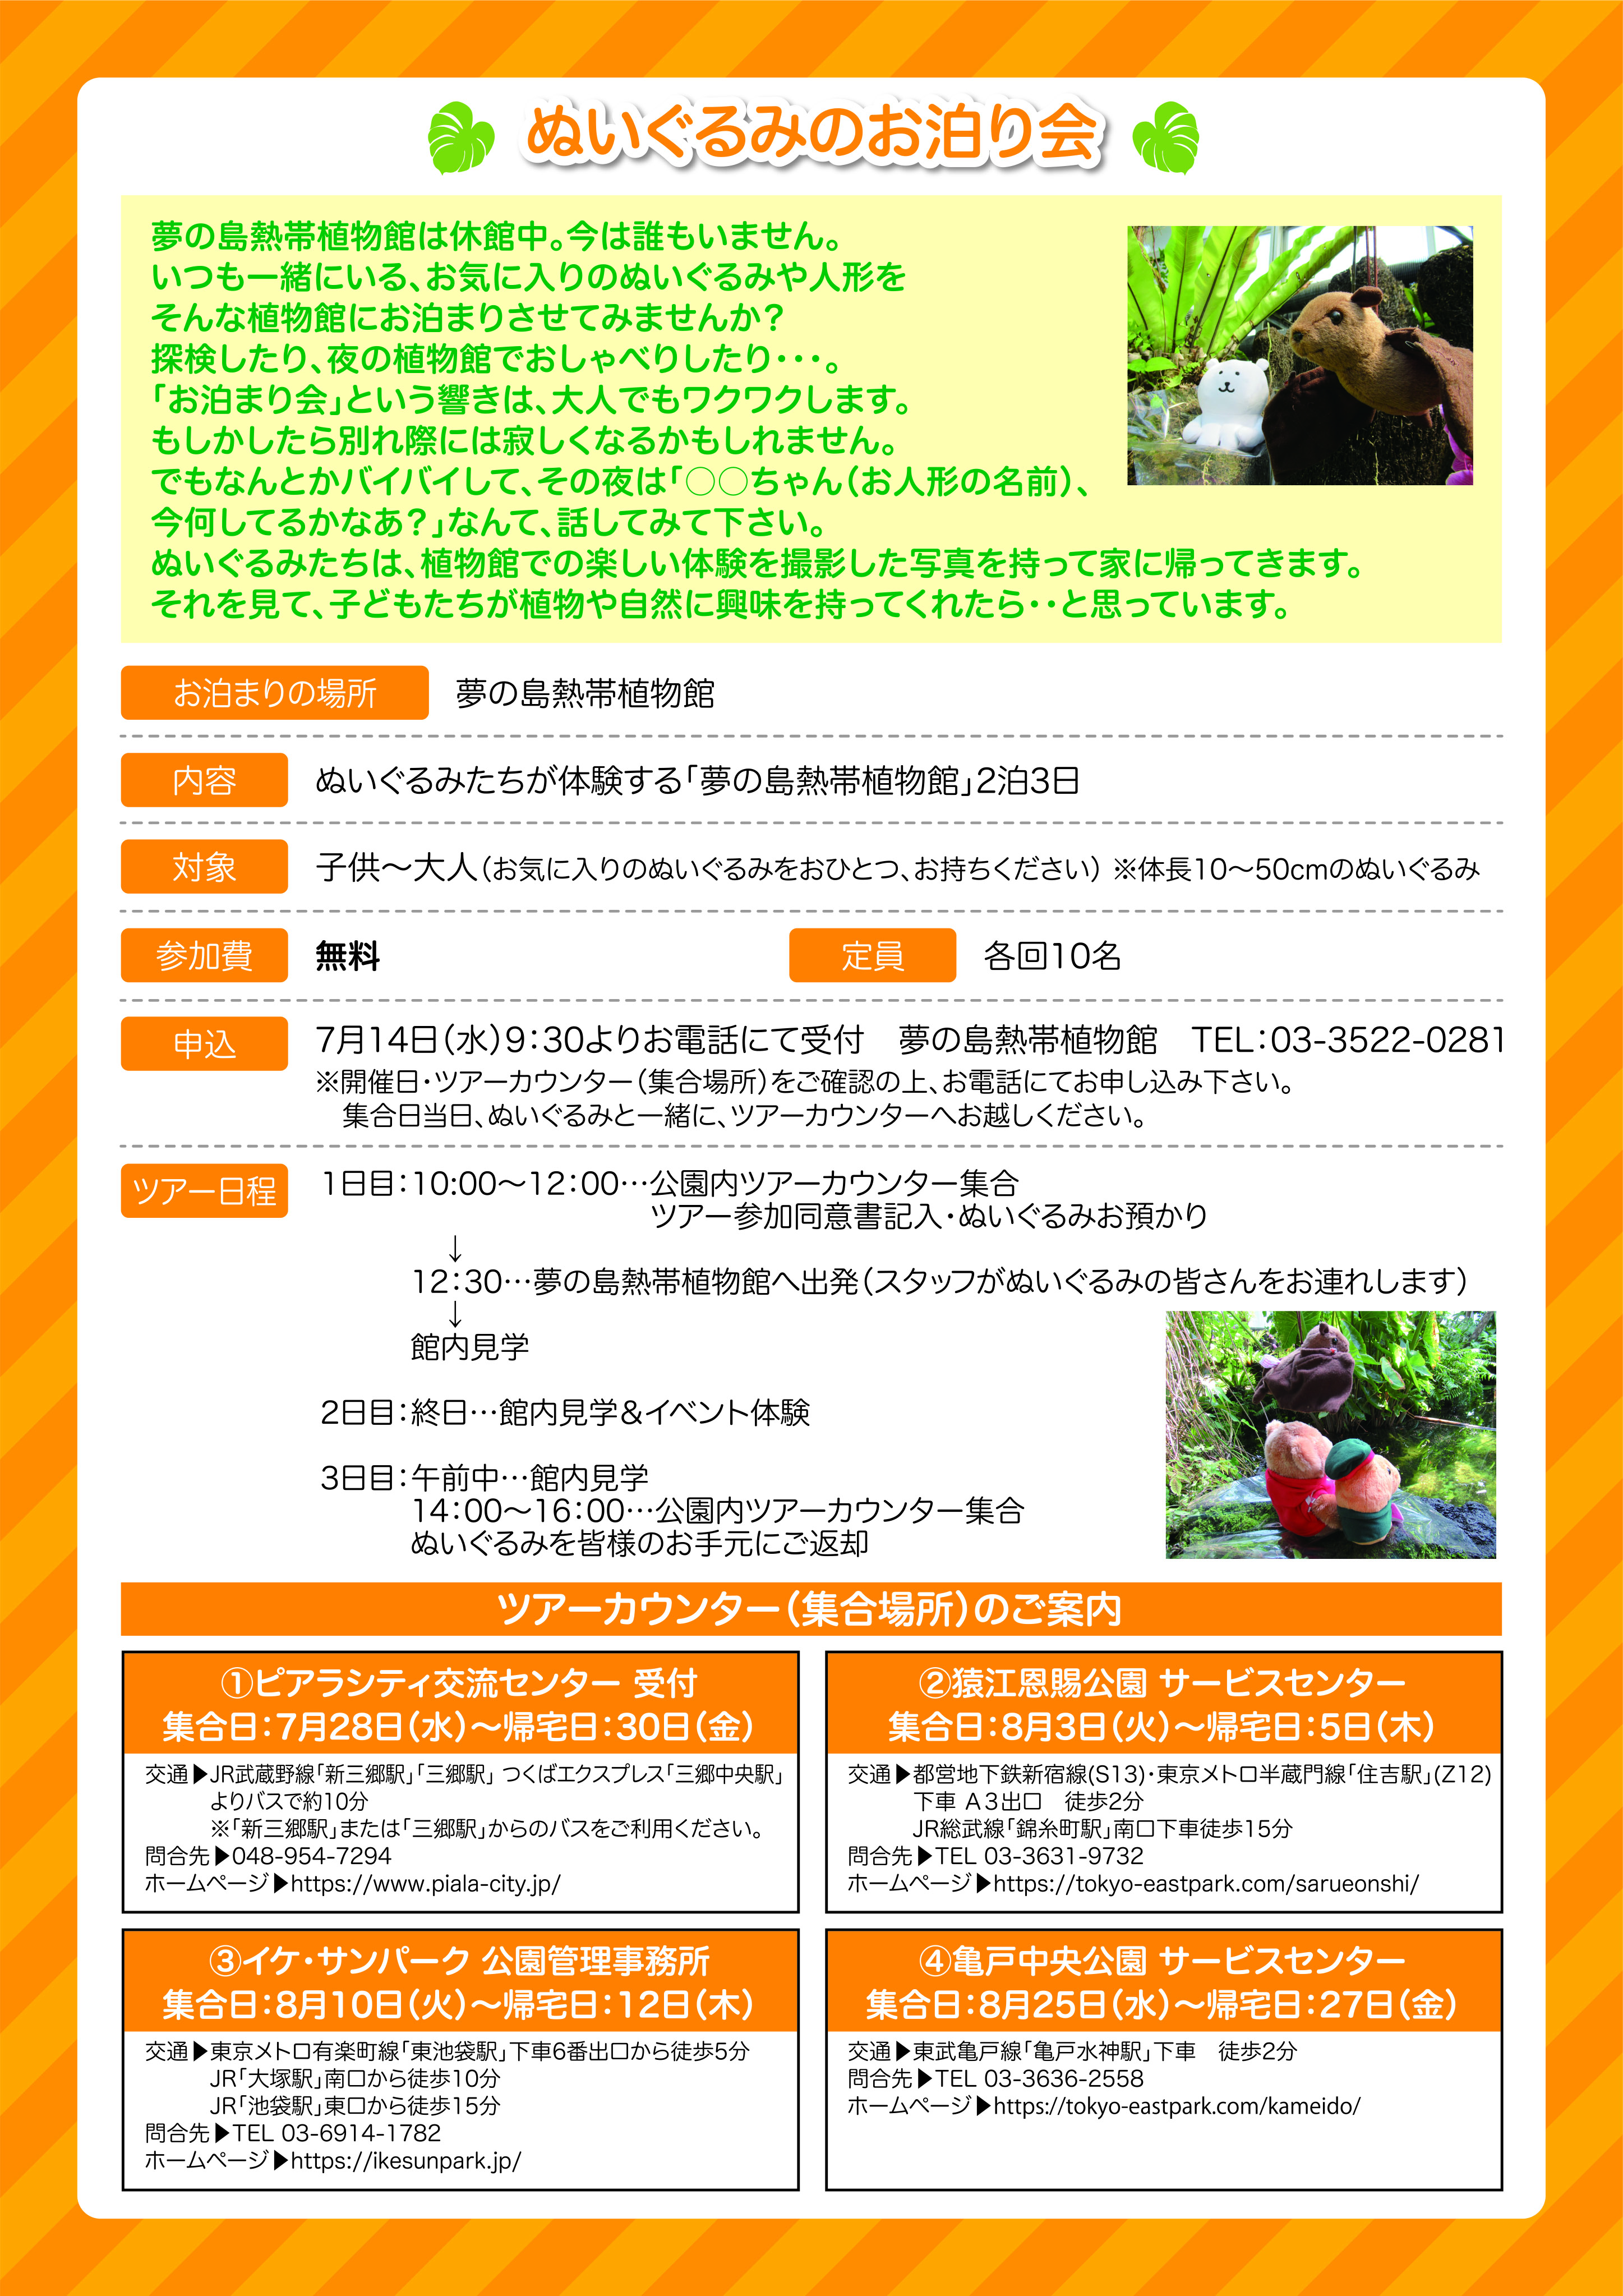 ぬいぐるみのおとまり会 21 In 夢の島熱帯植物館 を開催します 新木場 夢の島 若洲まっぷ 東京 地域情報発信サイト